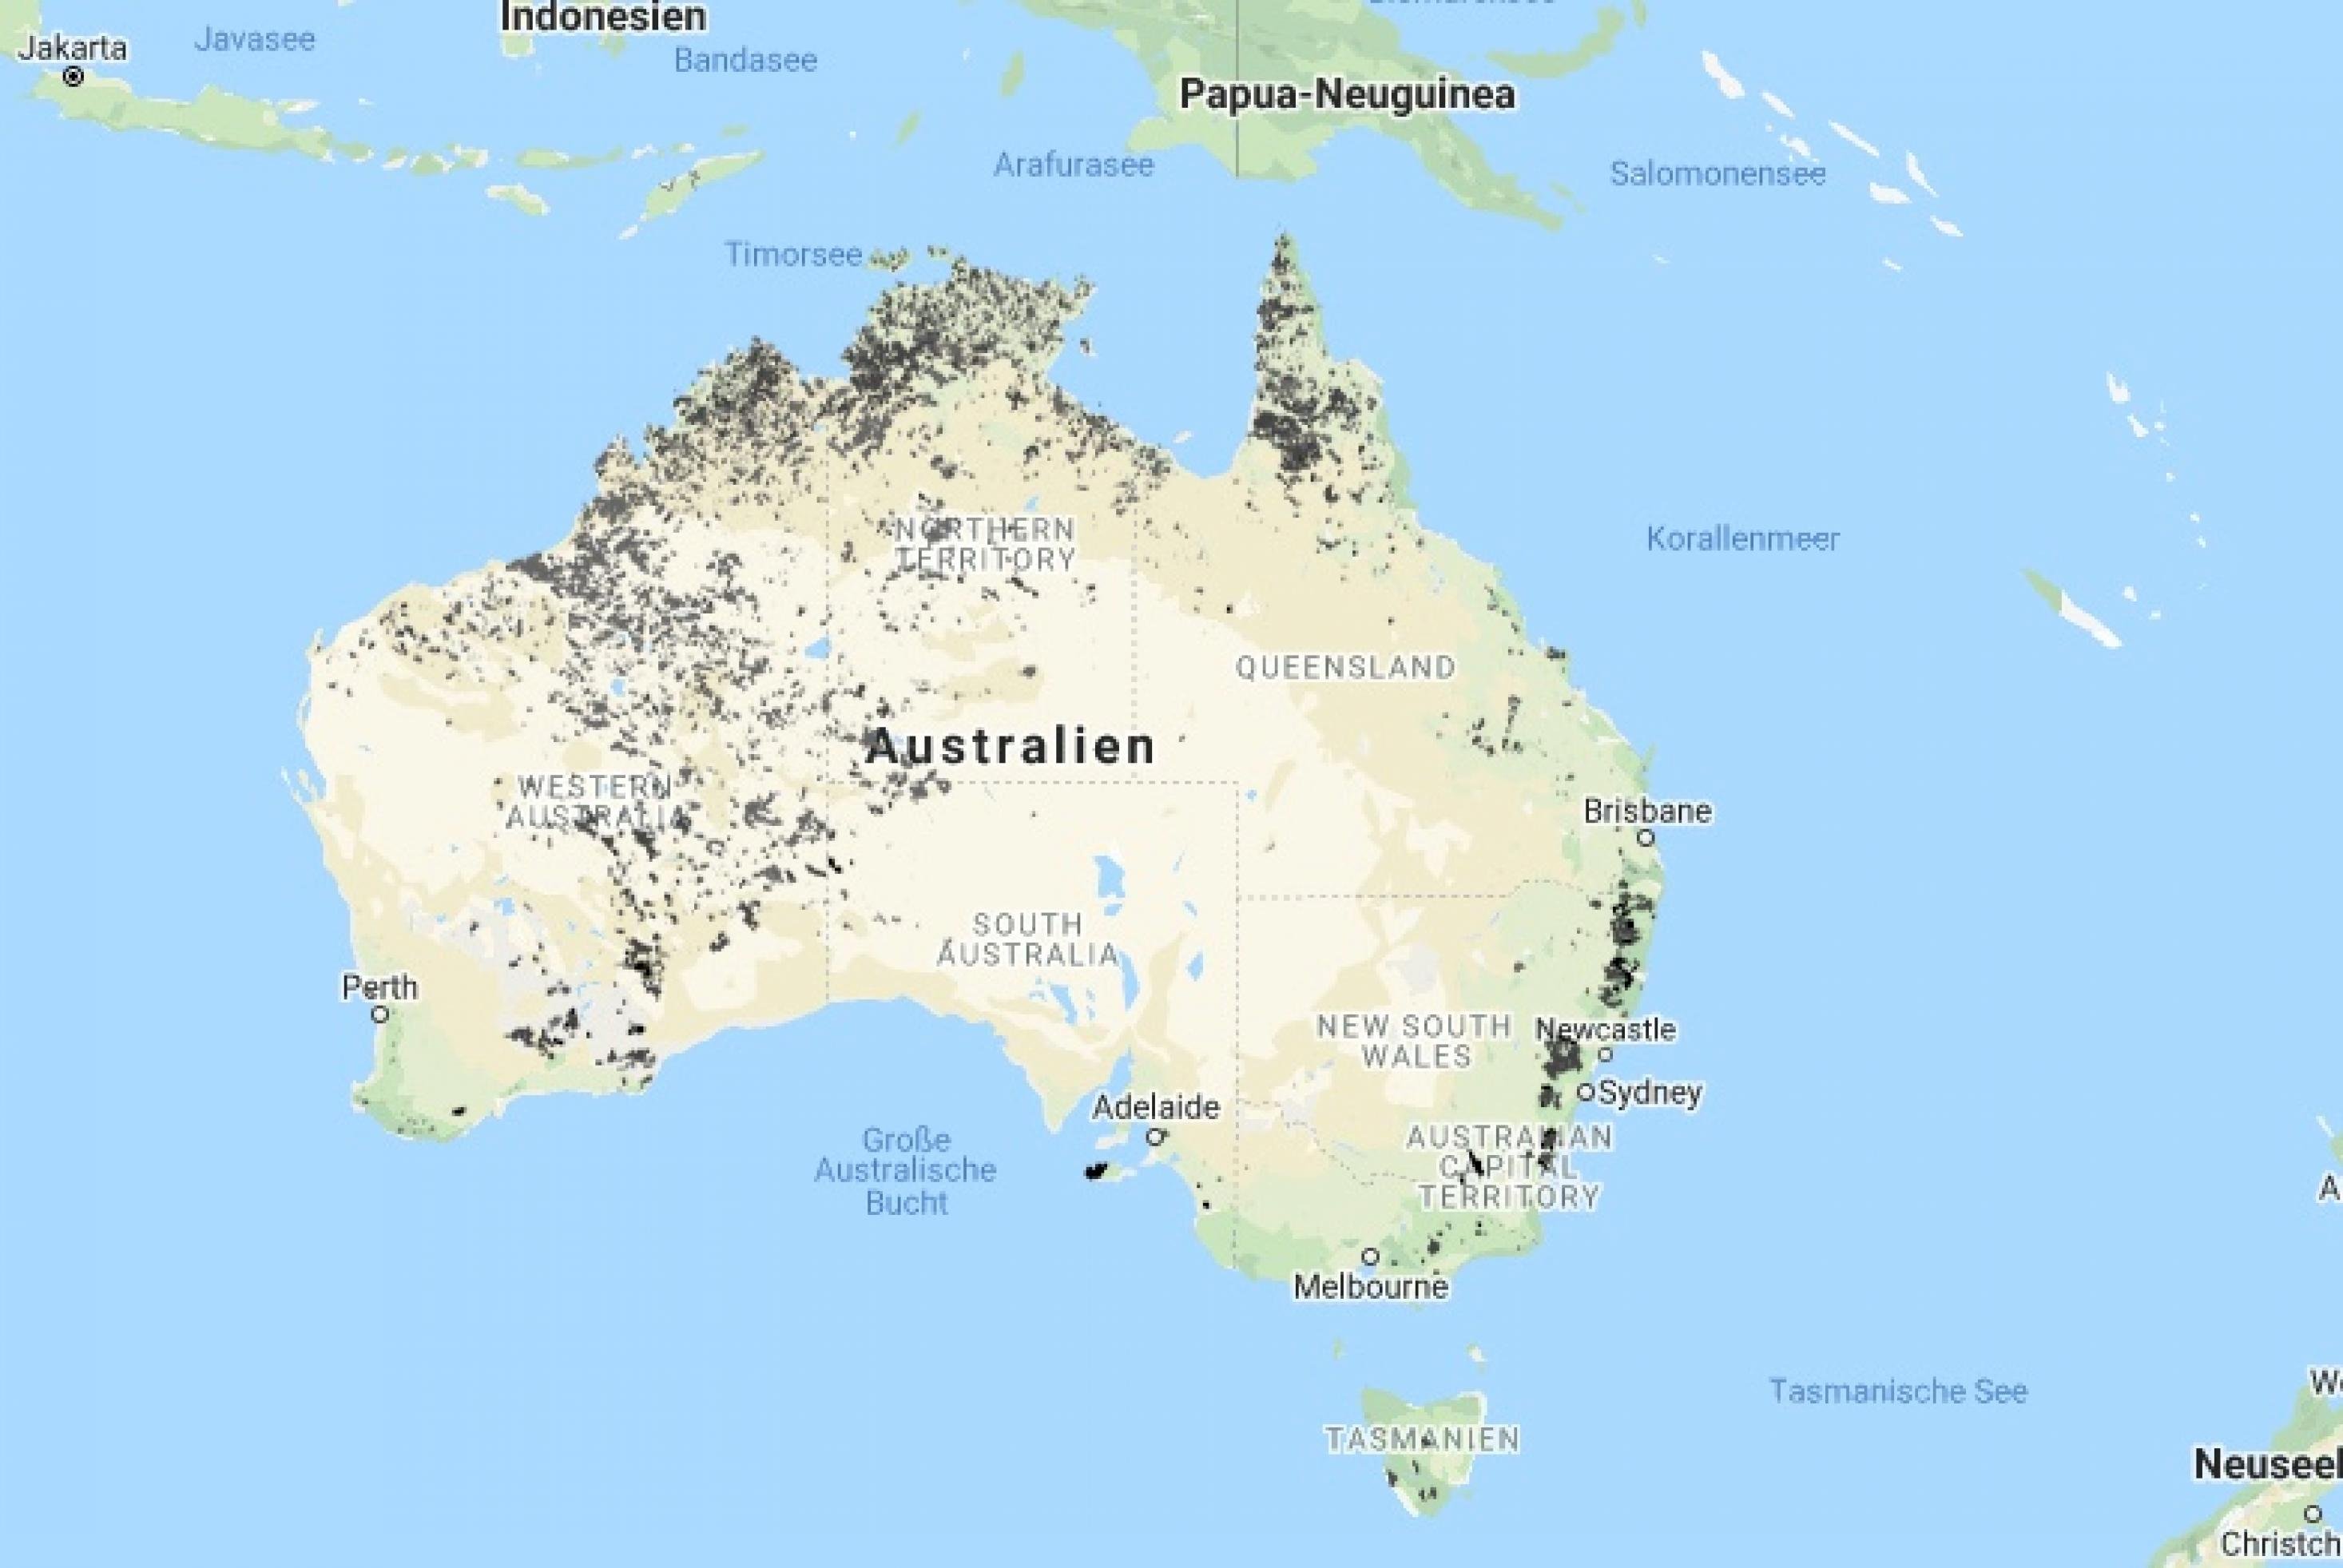 Karte von Australien in der mit Schwarz bestimmte Gebiete markiert wurden.